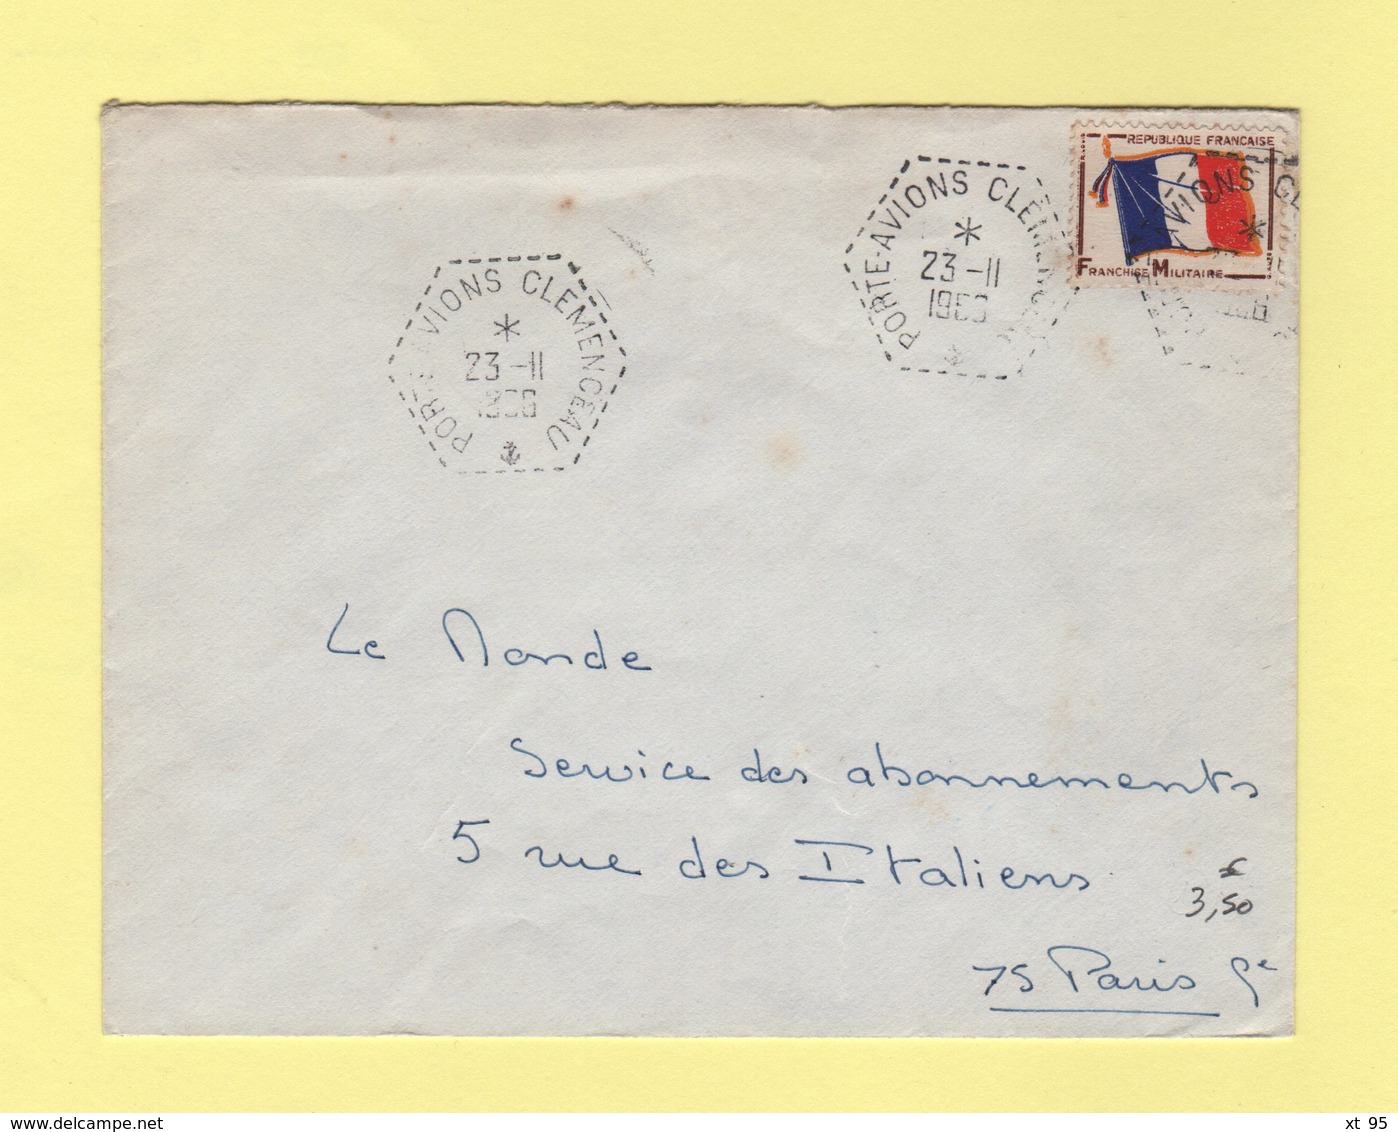 Poste Navale - Porte Avion Clemenceau - 23-11-1966 - Timbre FM - Poste Navale